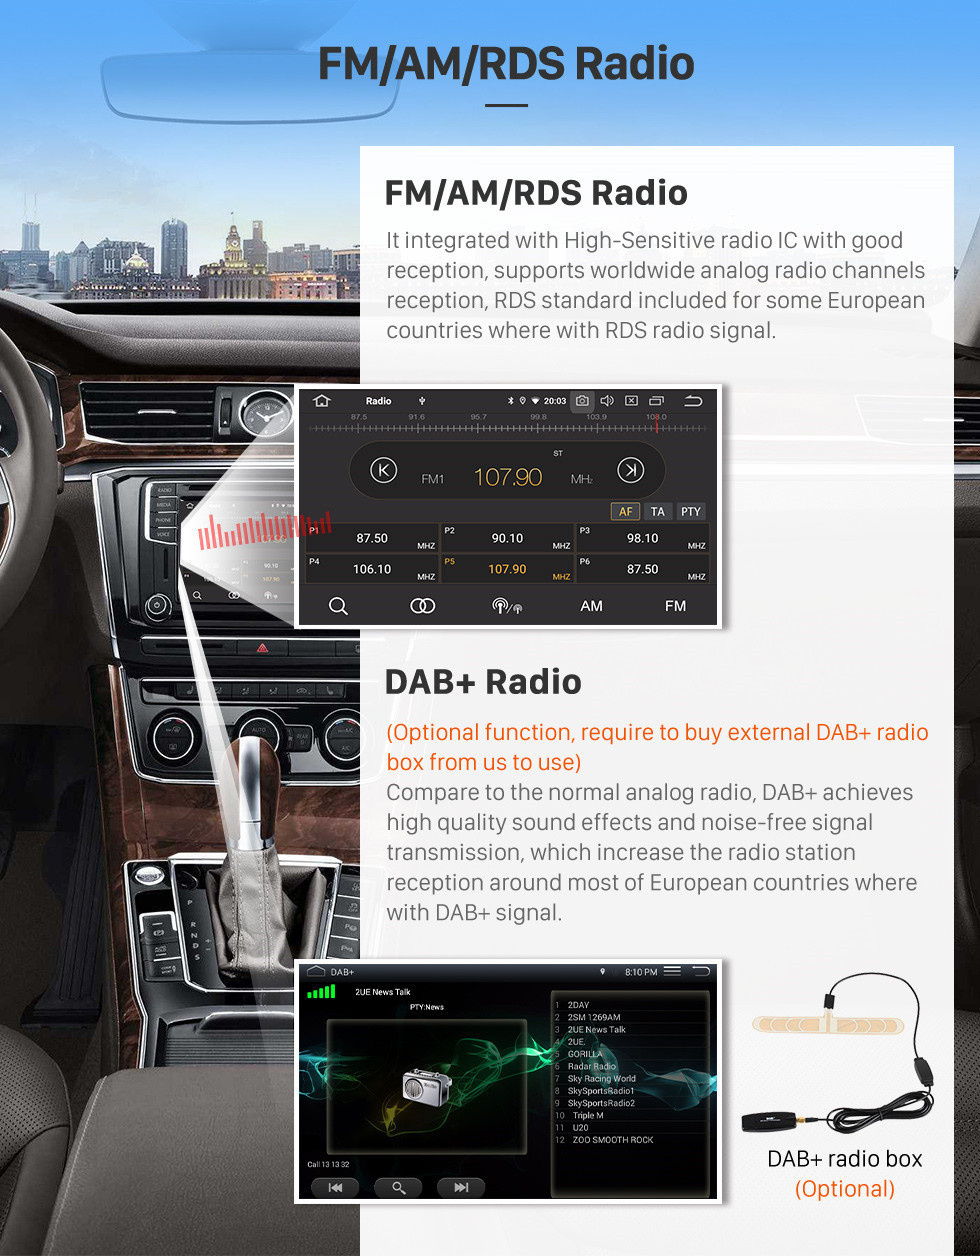 Seicane 2001-2008 Peugeot 307 Android 11.0 9 polegada Navegação GPS Rádio Bluetooth HD Touchscreen USB Carplay Música suporte TPMS DAB + 1080 P Vídeo Espelho link